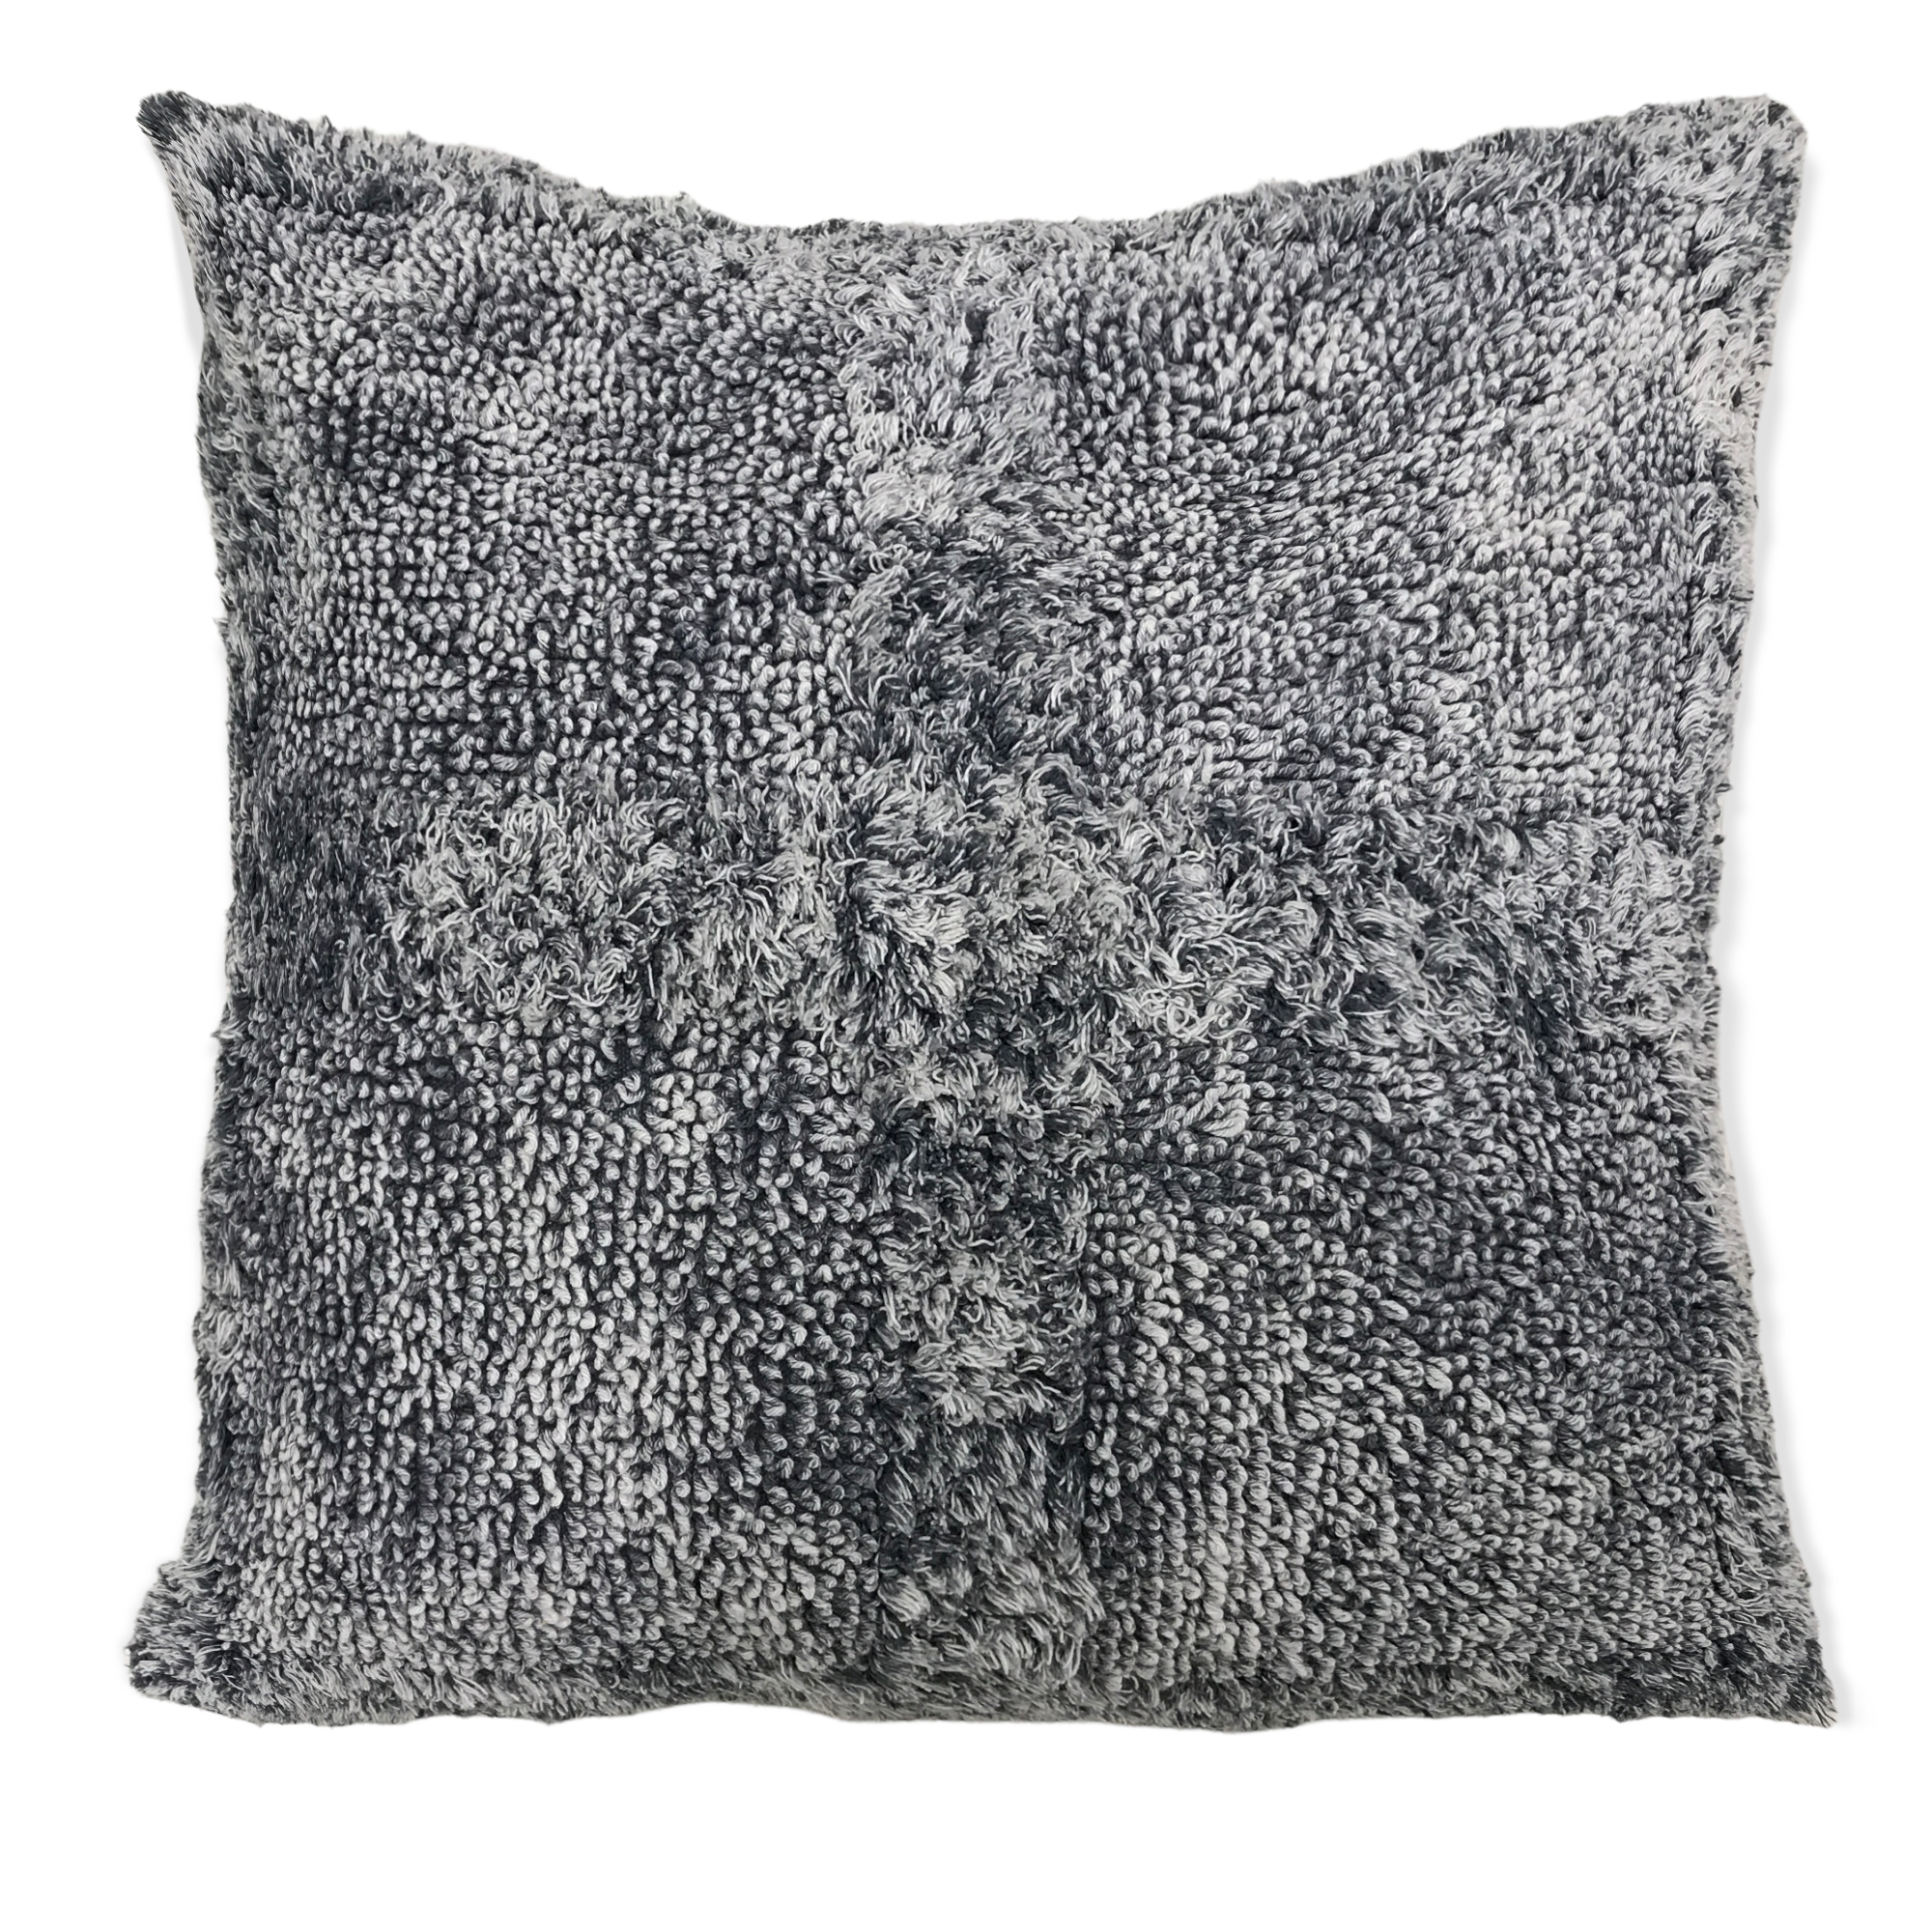 Stone Wash Cross Pattern Pillow